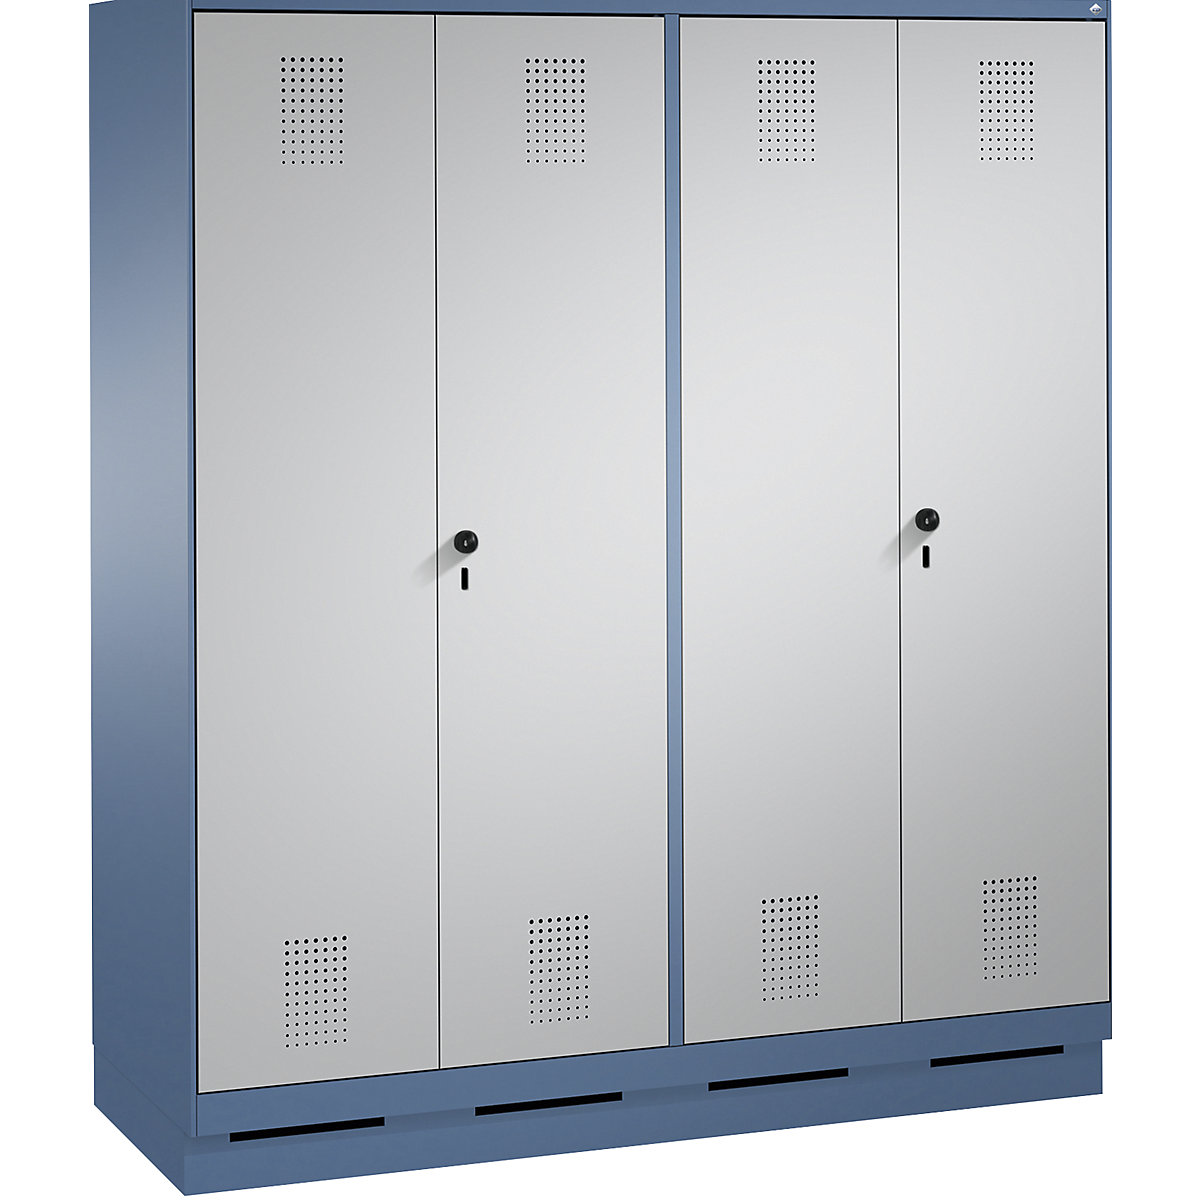 Szafa szatniowa EVOLO, drzwi zamykane do siebie – C+P, 4 przedziały, szer. przedziału 400 mm, z cokołem, niebiesko-mglista / biały aluminium-9